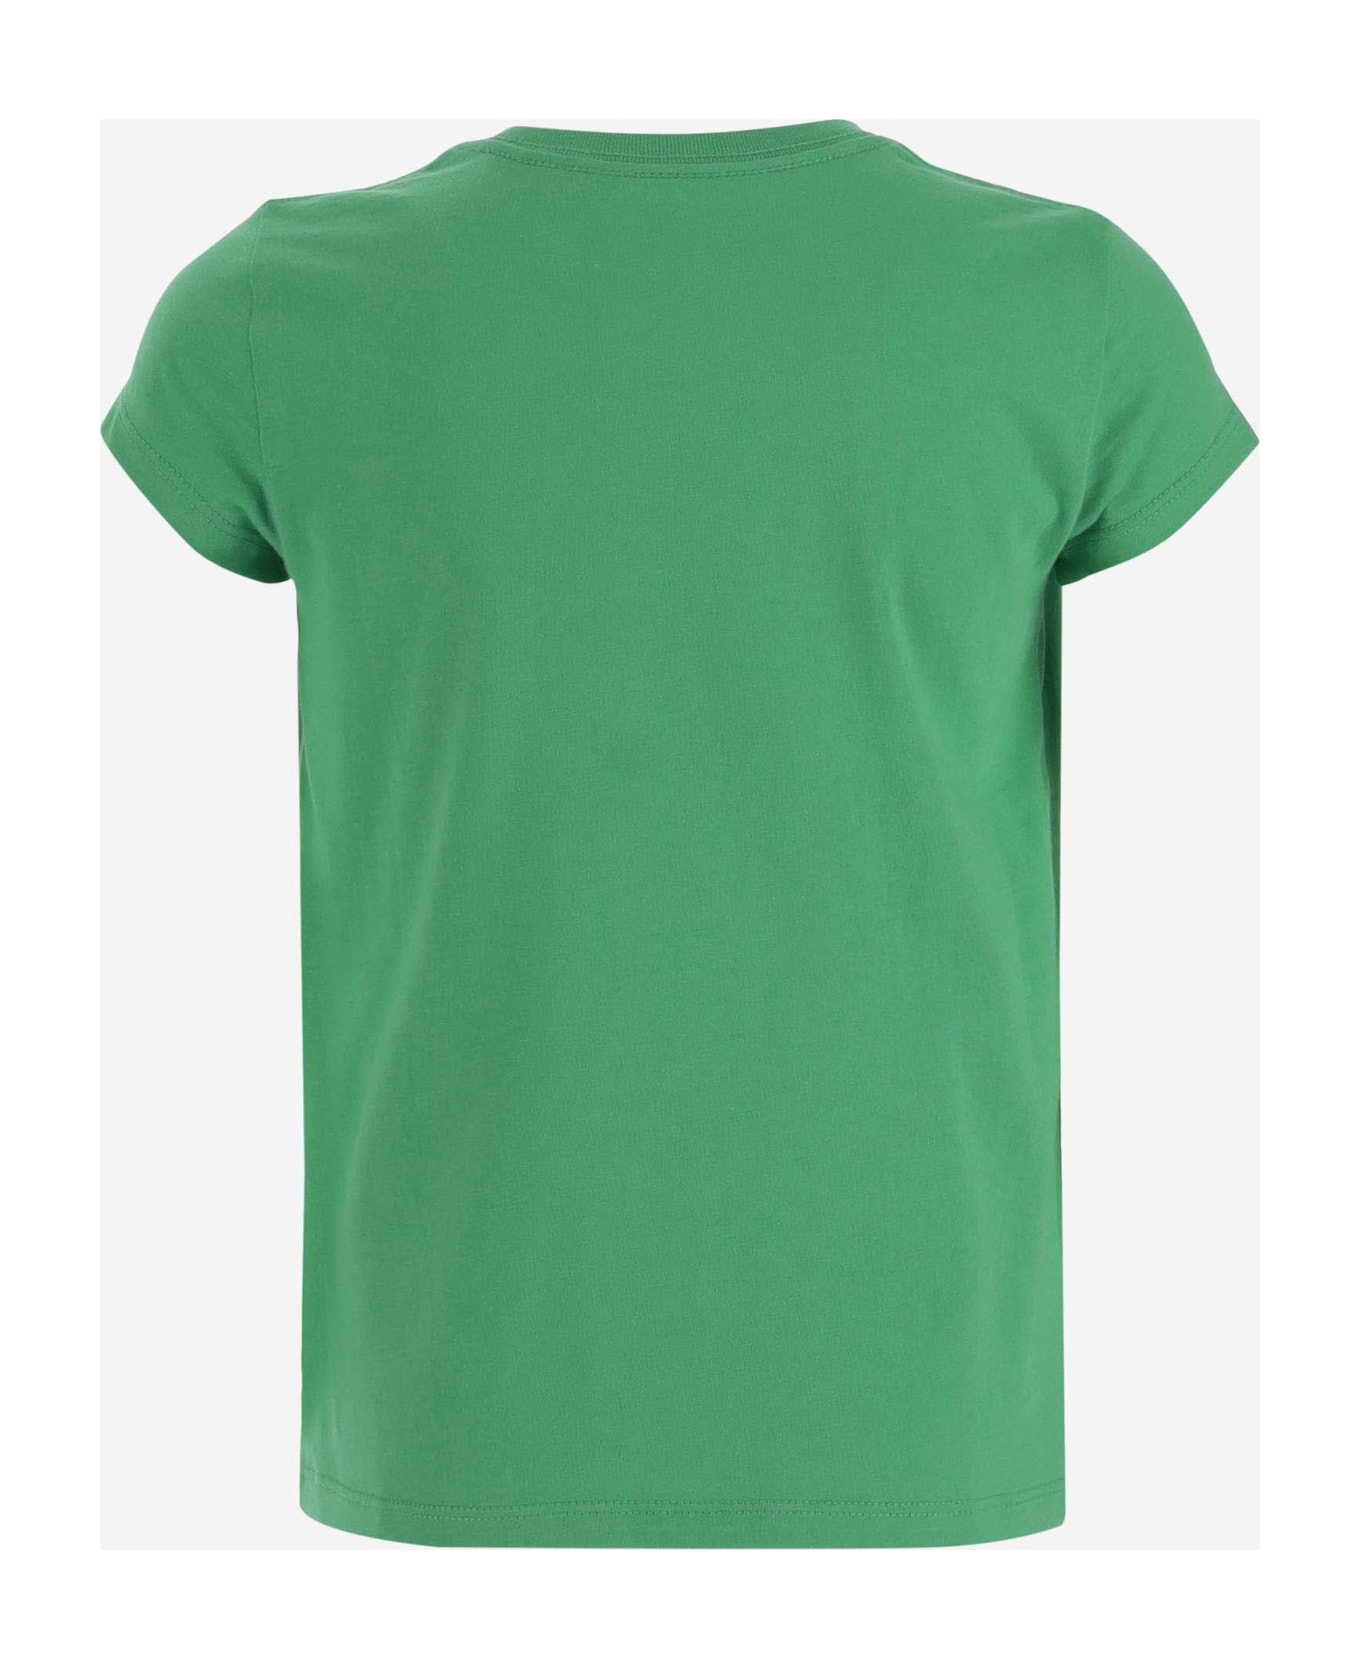 Polo Ralph Lauren Cotton T-shirt With Logo - Green